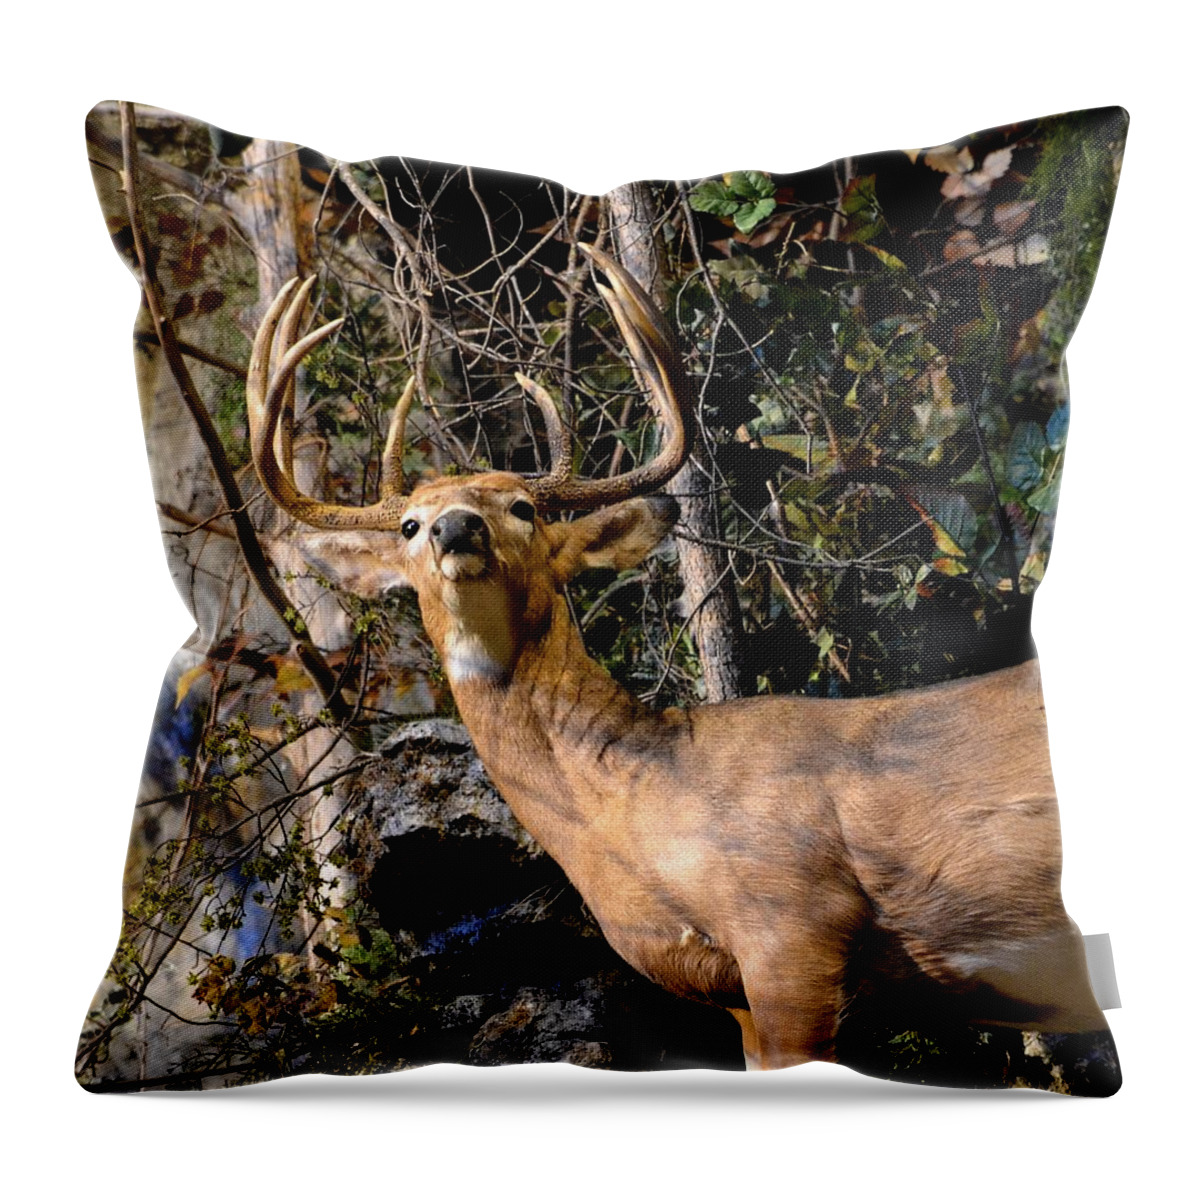 Deer Throw Pillow featuring the photograph Buck On A Ridge by Deena Stoddard